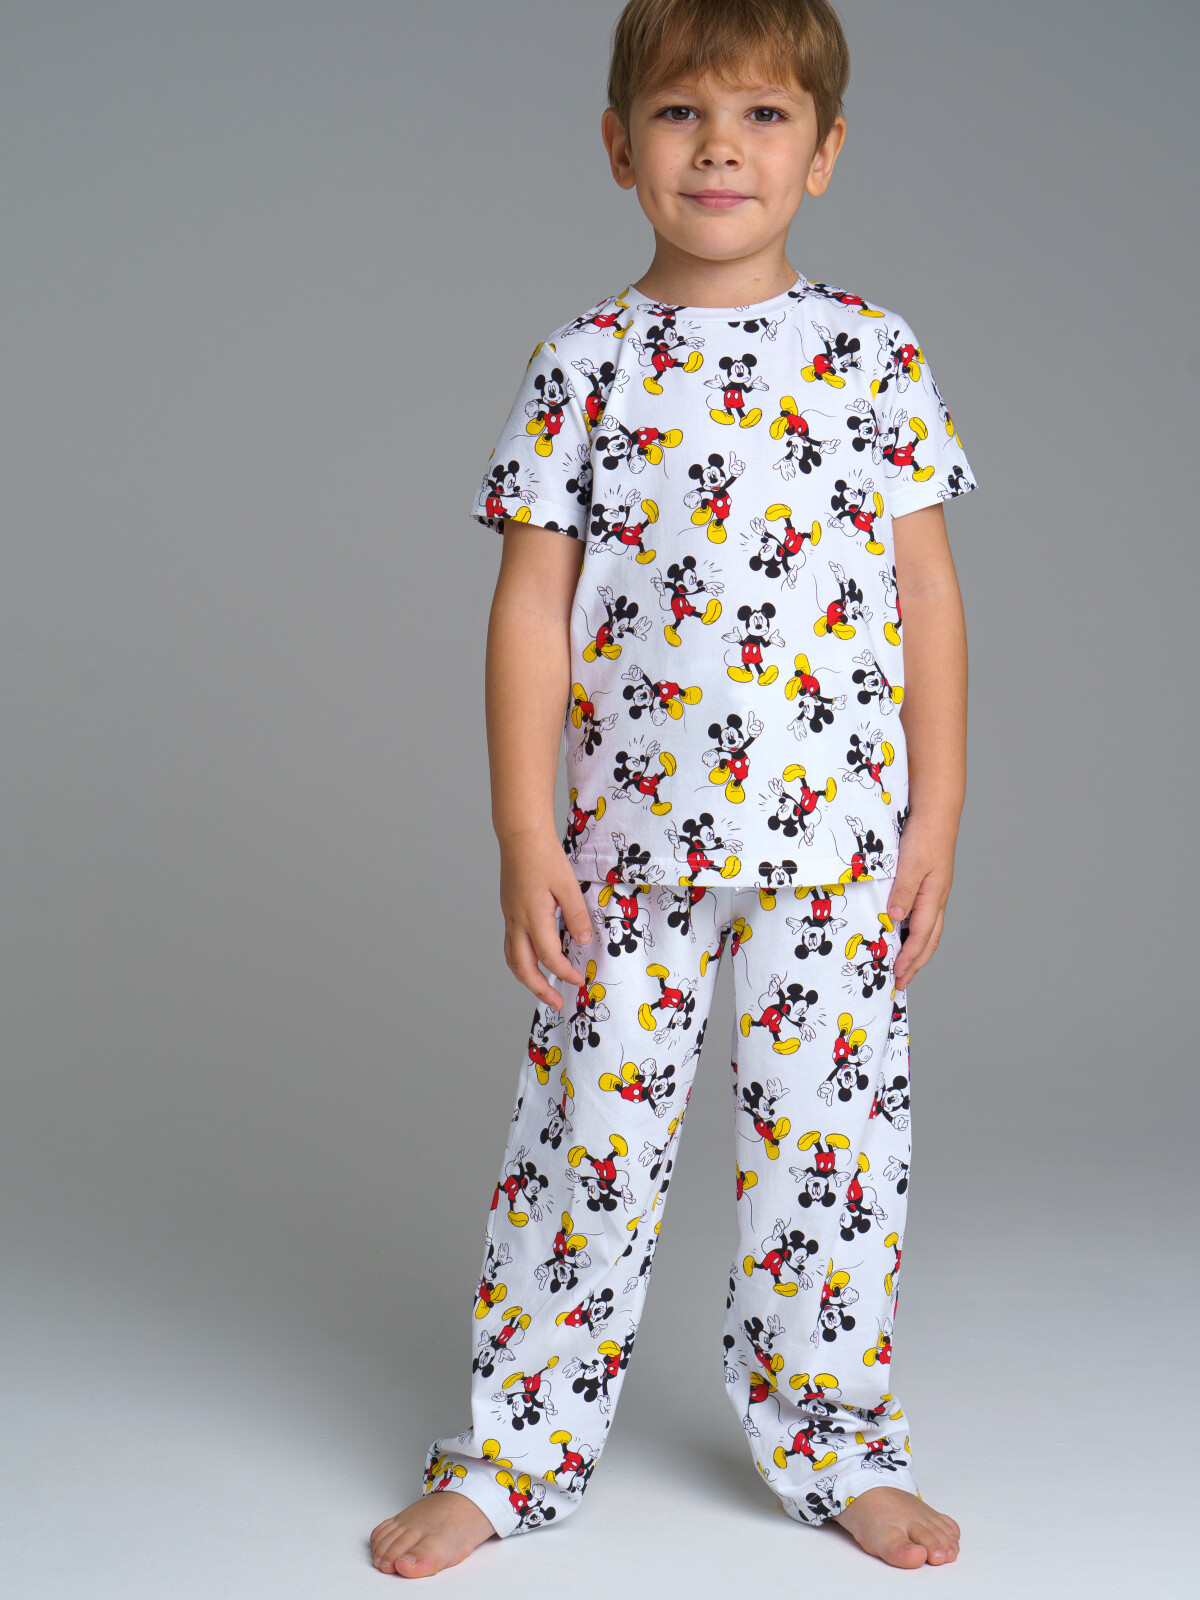 Пижама с персонажами Disney футболка, брюки PlayToday 12332141 белый, разноцветный, 116